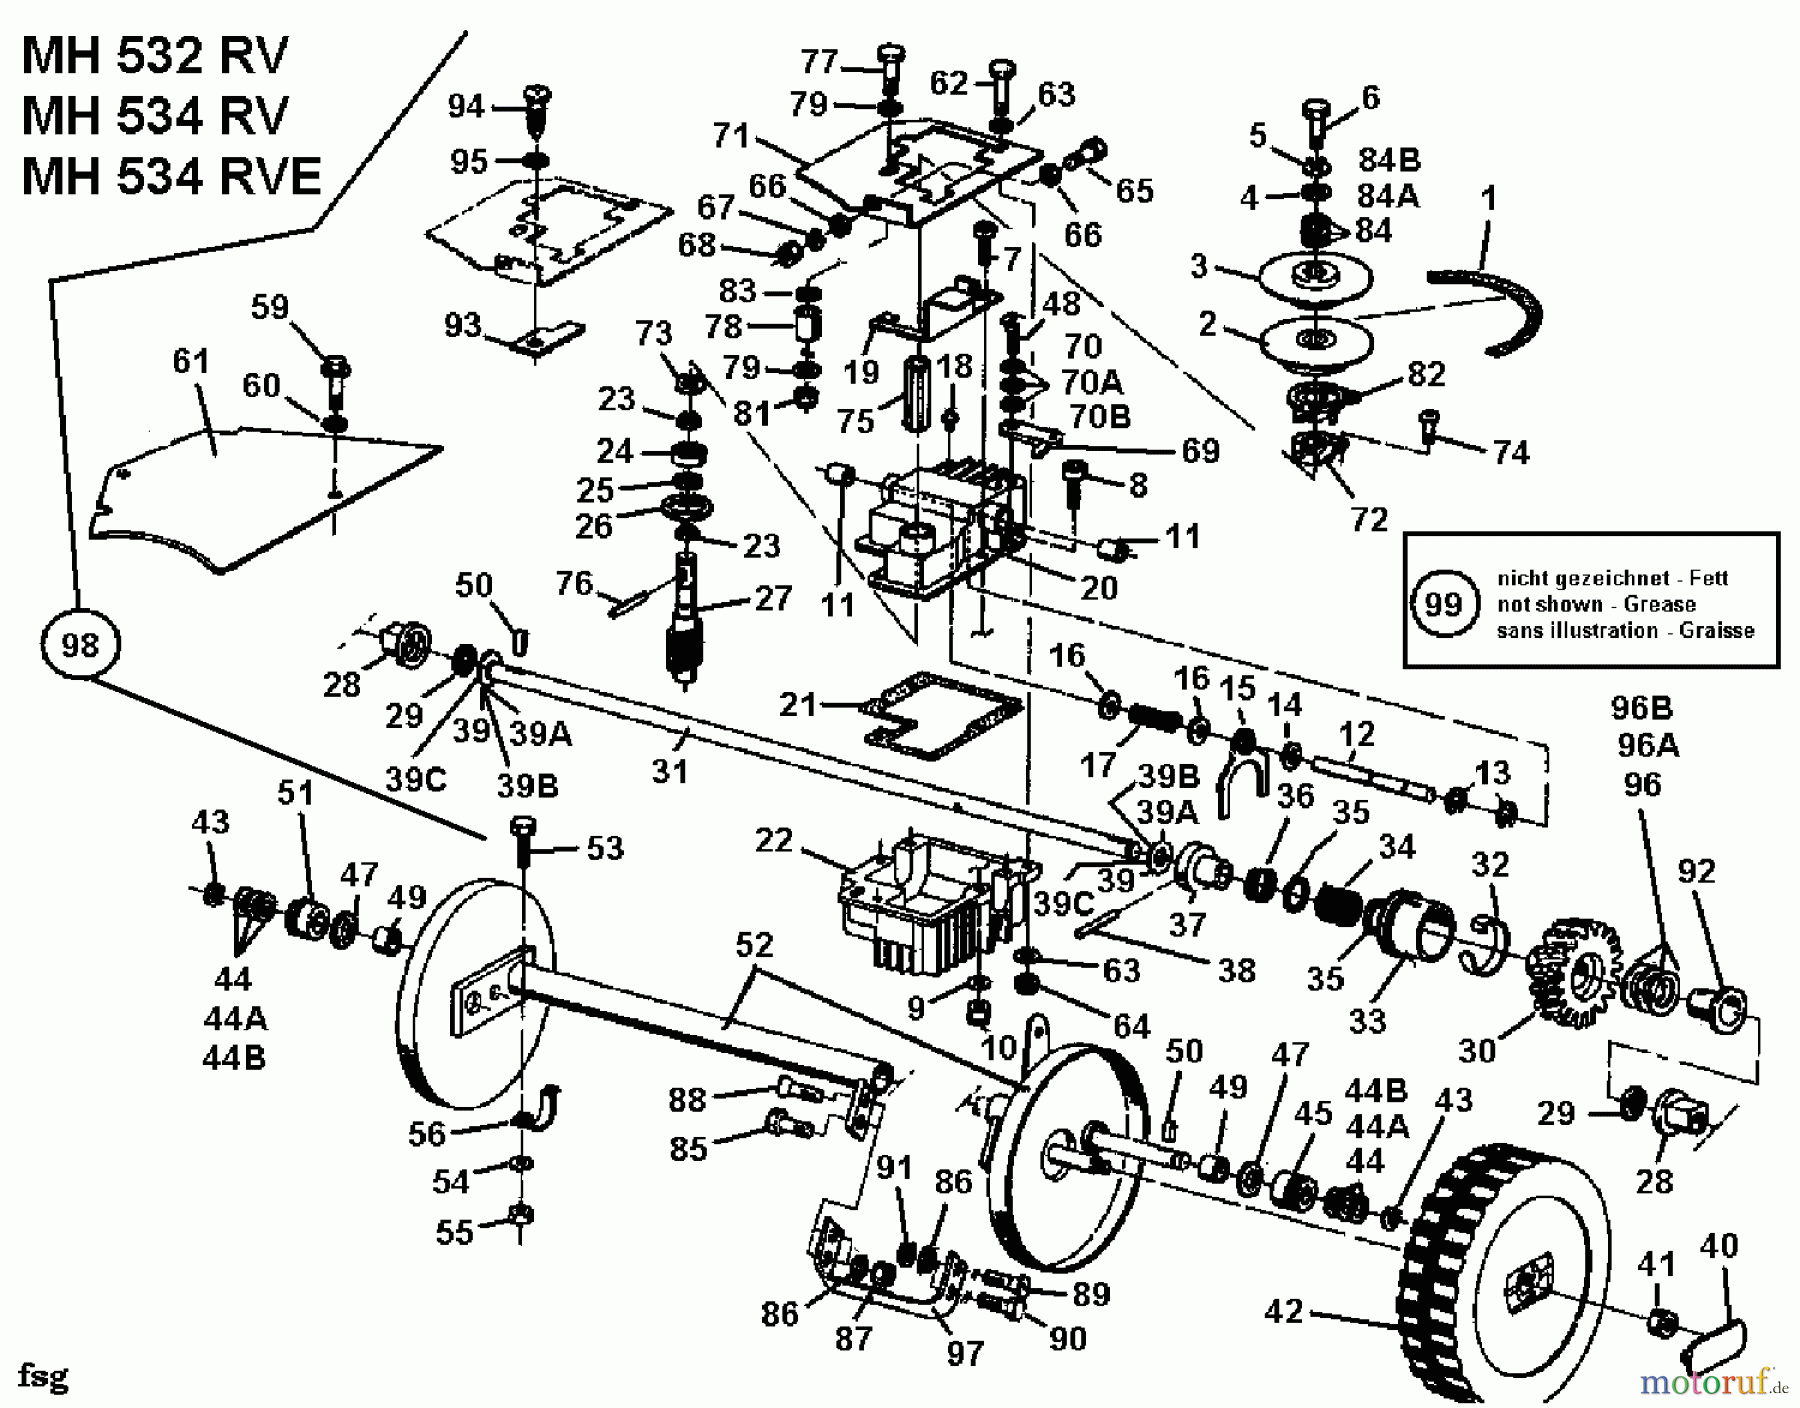  Gutbrod Motormäher mit Antrieb MH 534 RV 04007.02  (1994) Getriebe, Räder